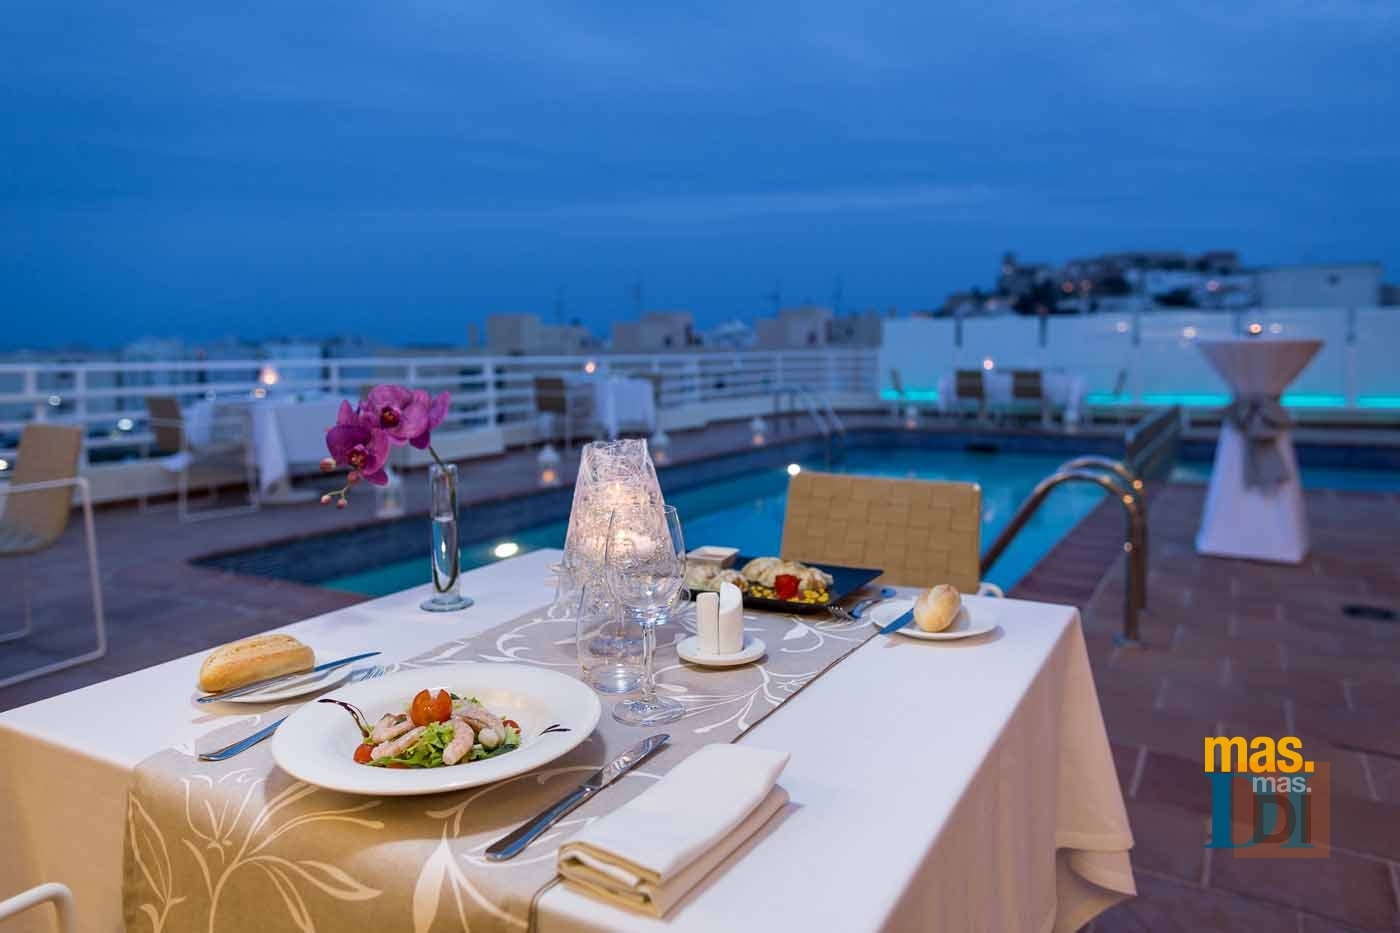 HOTEL ROYAL PLAZA, cocina de inspiración mediterránea